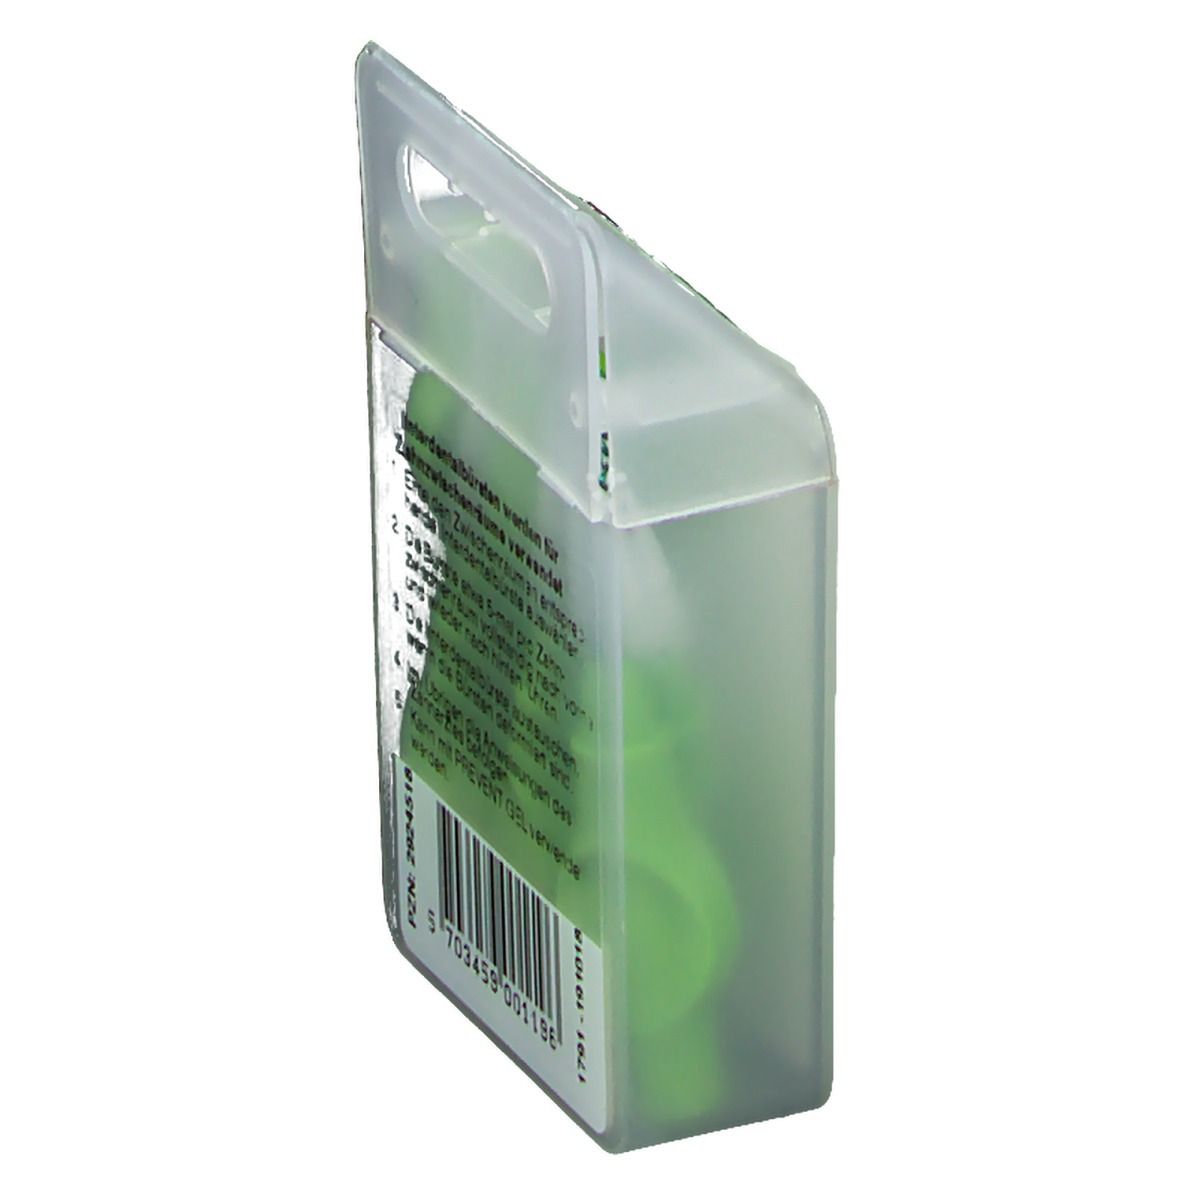 TANDEX FLEXI™ Interdentalbürste grün spitz zulaufend 3,0-6,0 mm